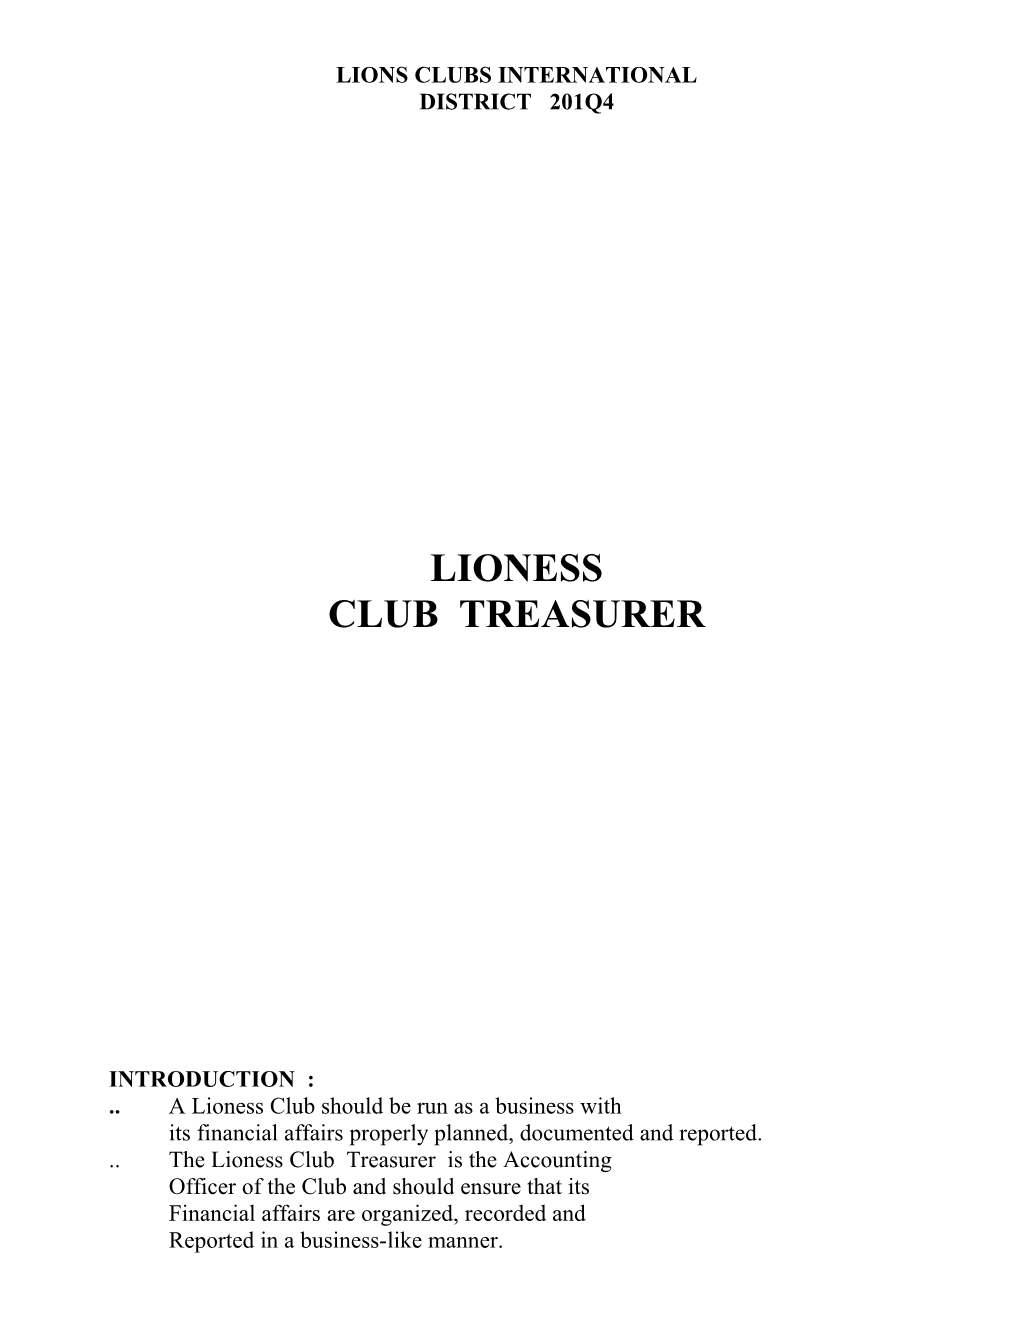 Lions Clubs International